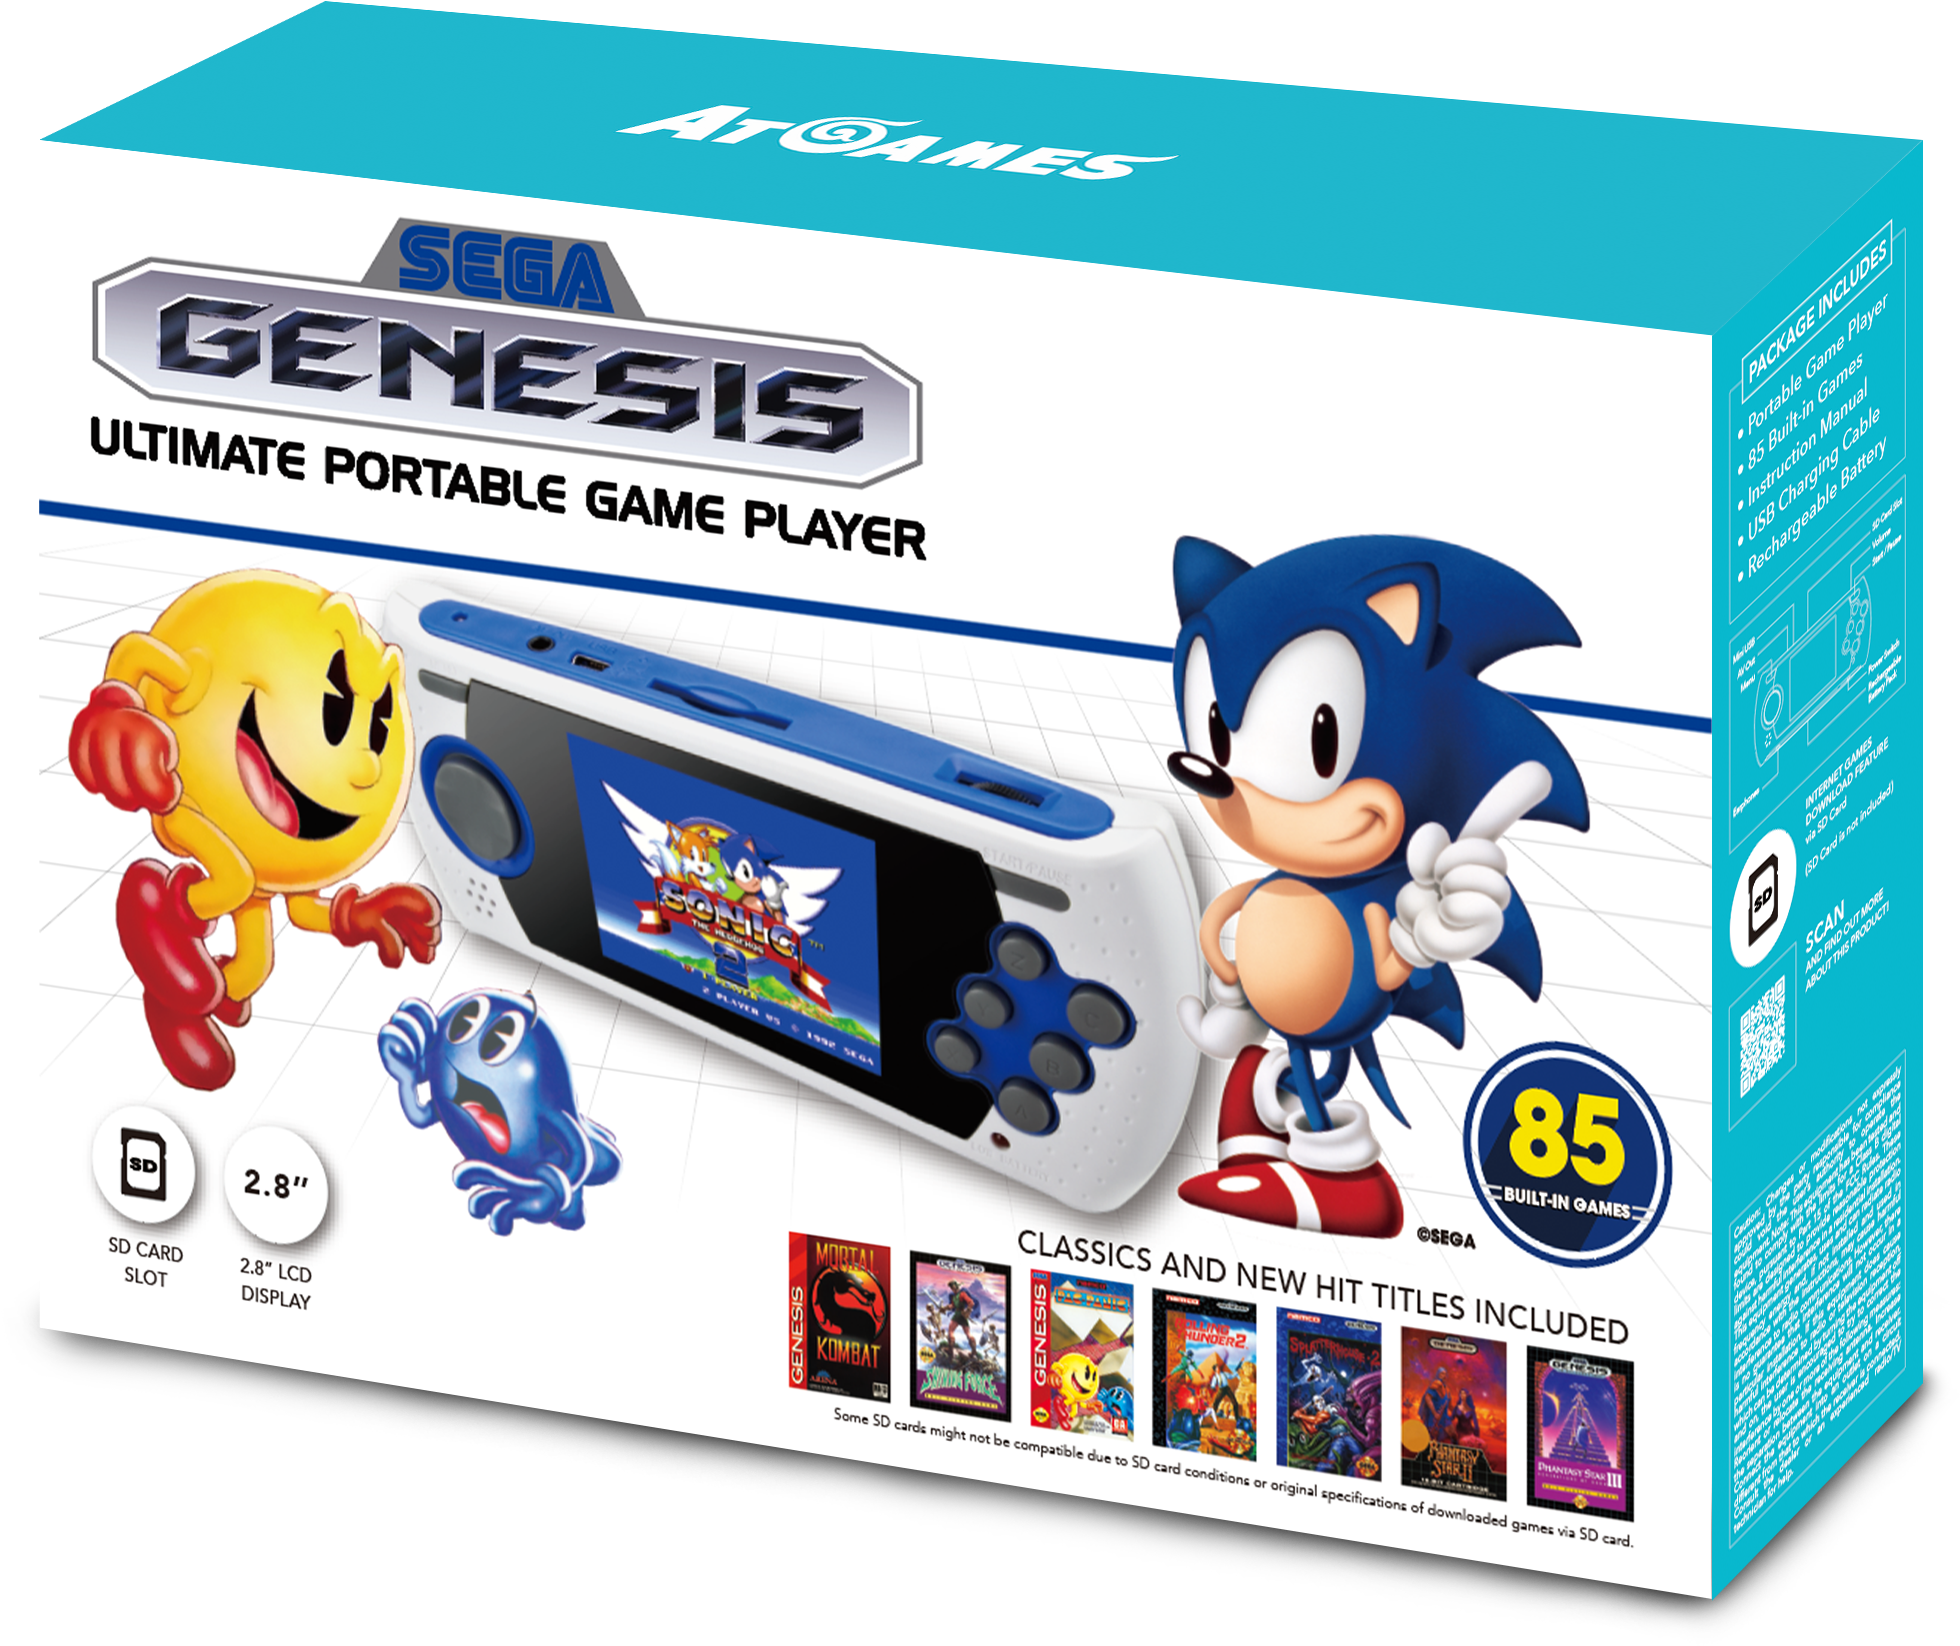 Sega Genesis Ultimate Portable Game Player - Sega Ultimate Portable Game Player 2017 Clipart (2362x2104), Png Download